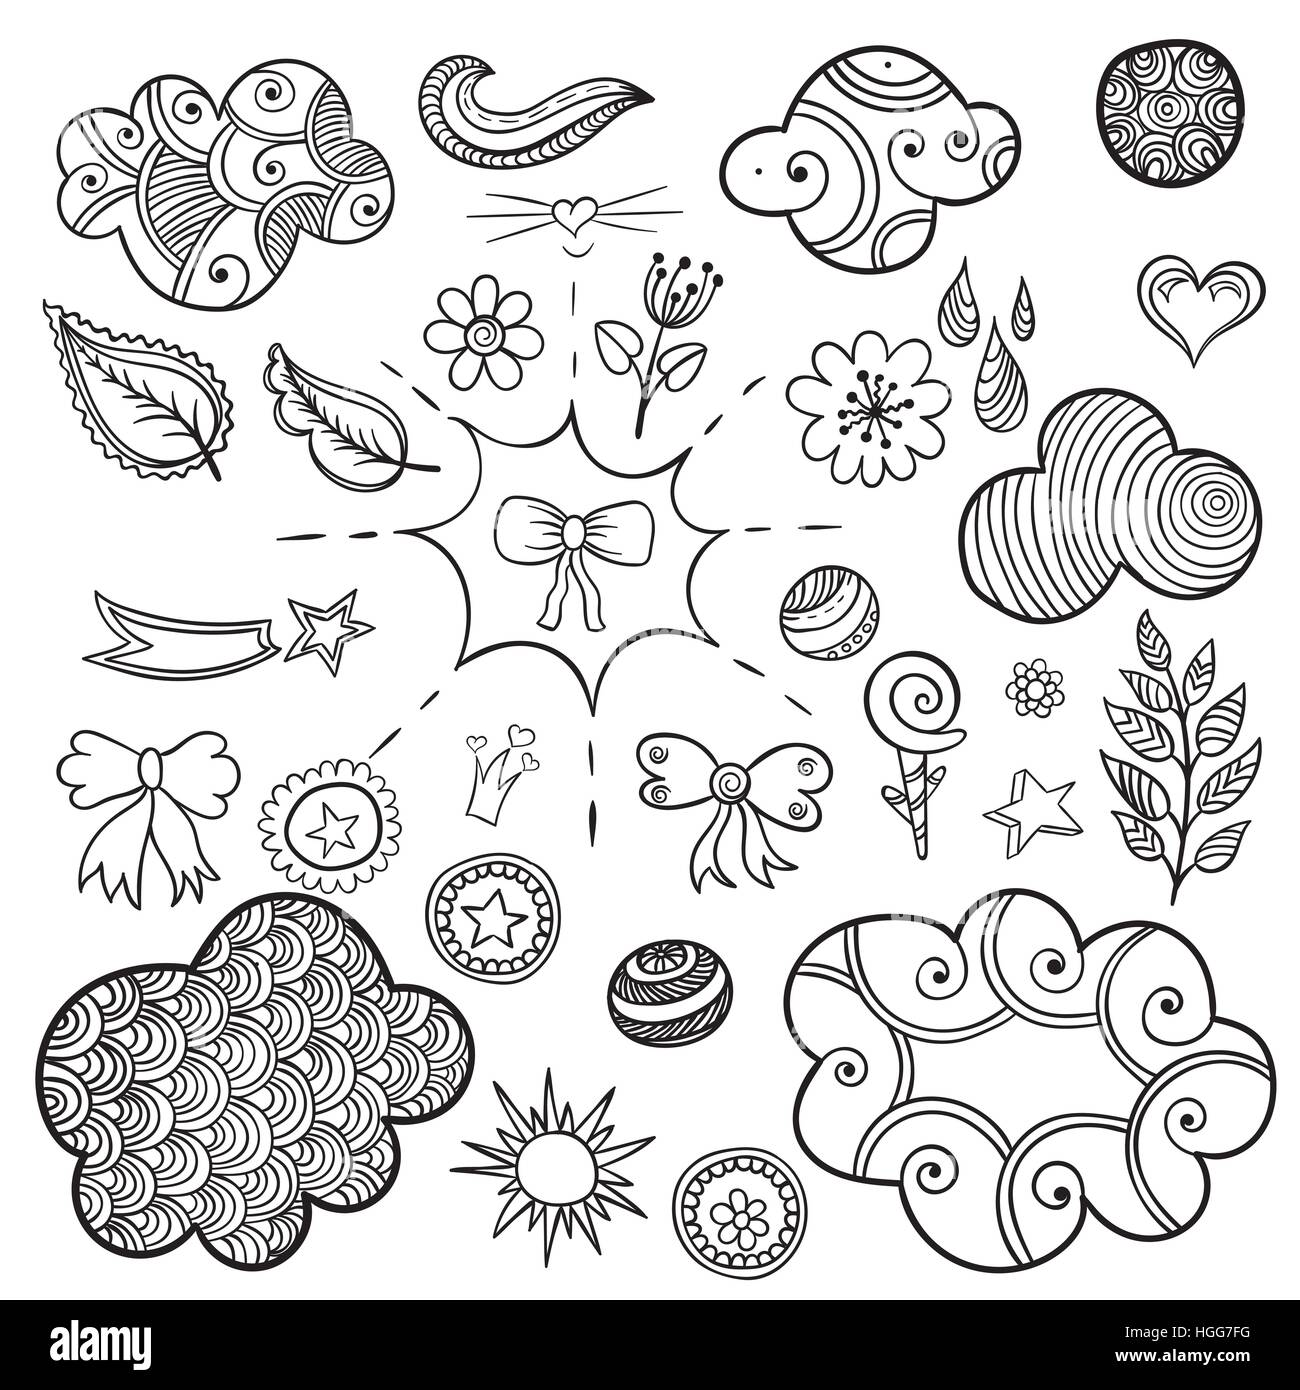 Vektor-Set von modischen patches Elemente wie Herz, Blume, Mail, Wolke, Blatt, Sonne. Stock Vektor